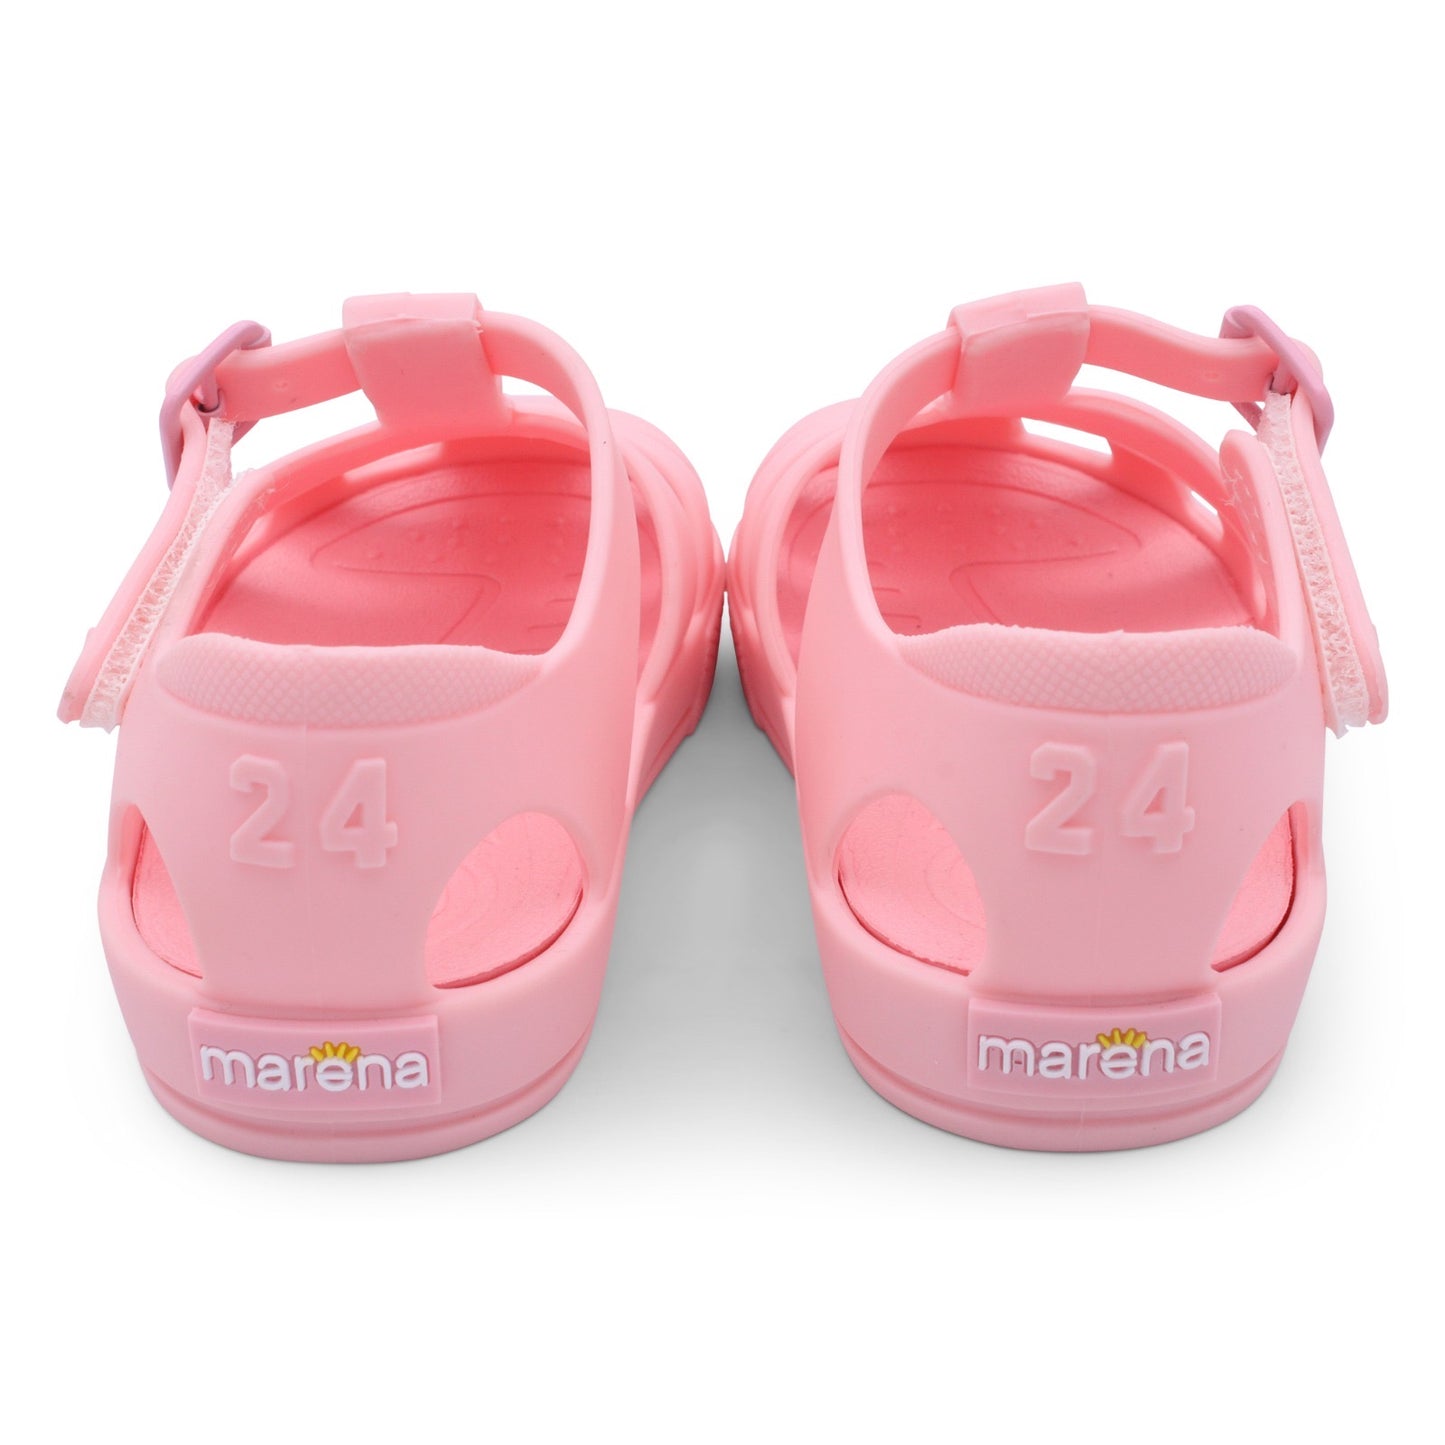 Girls pink Summer sandals by Marena Jelly’s - Adora Childrenswear